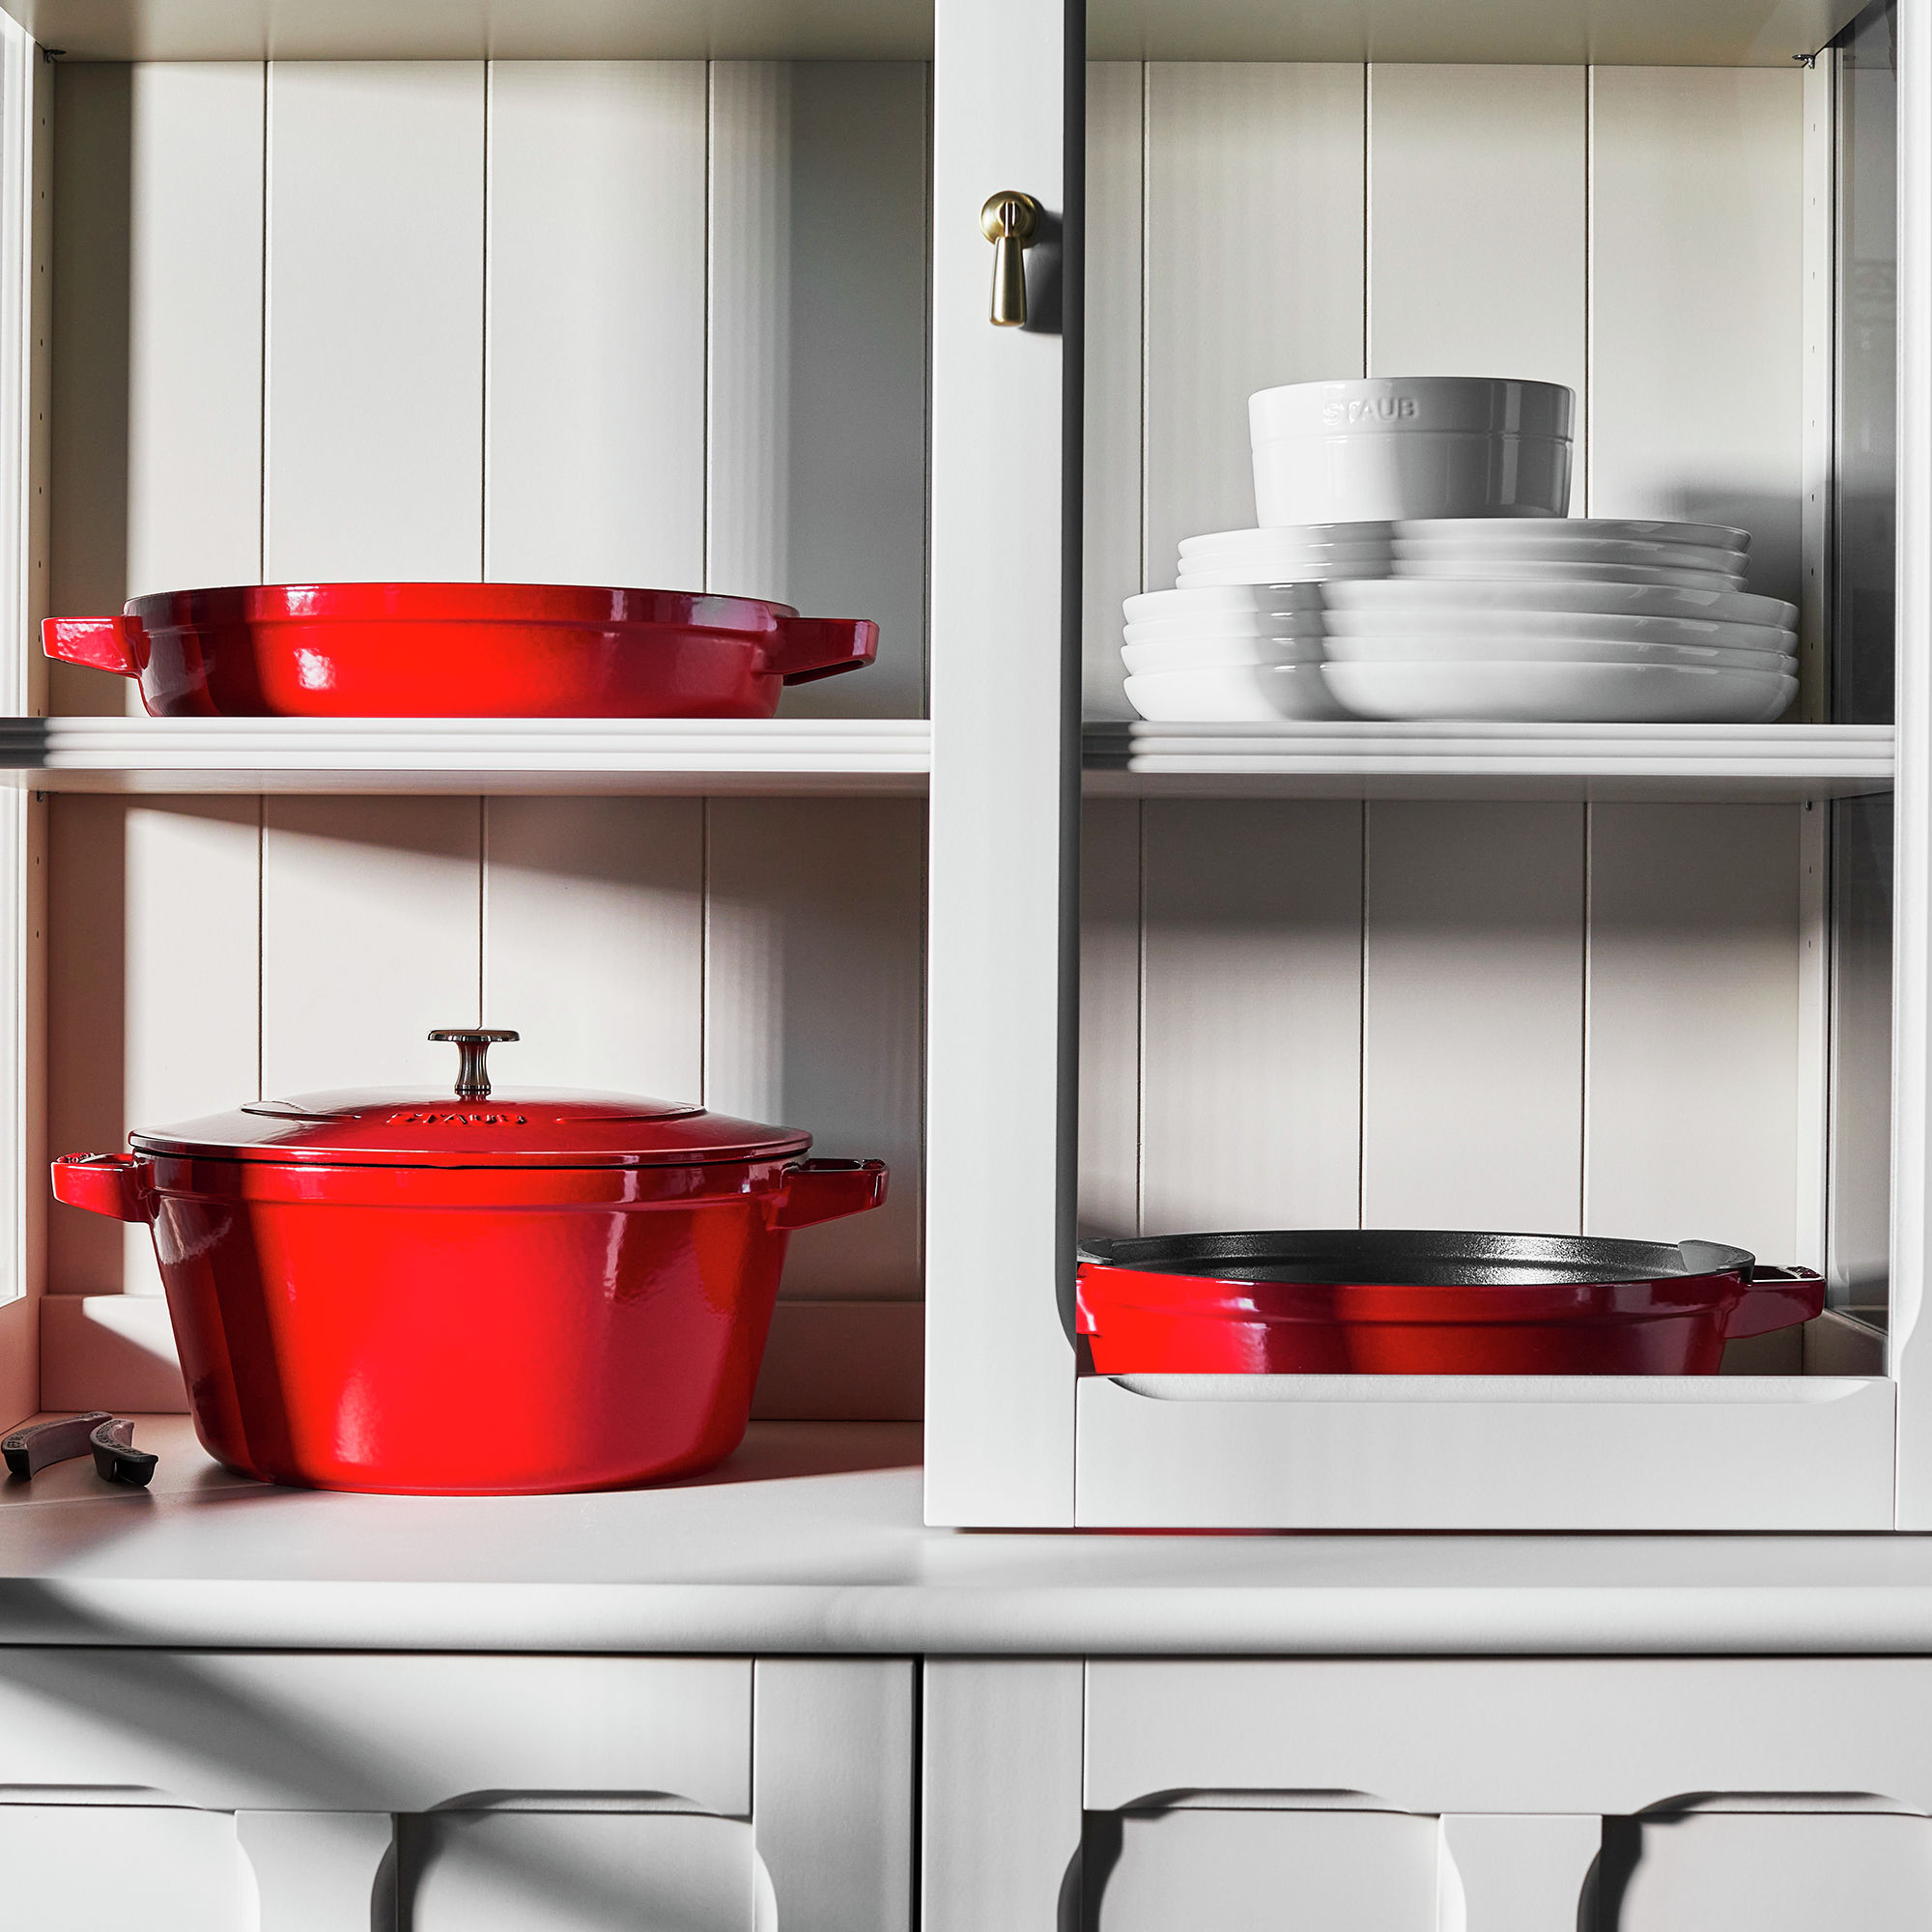 Staub Stackable 4 piece Dutch Oven Set – Kitchen a la Mode